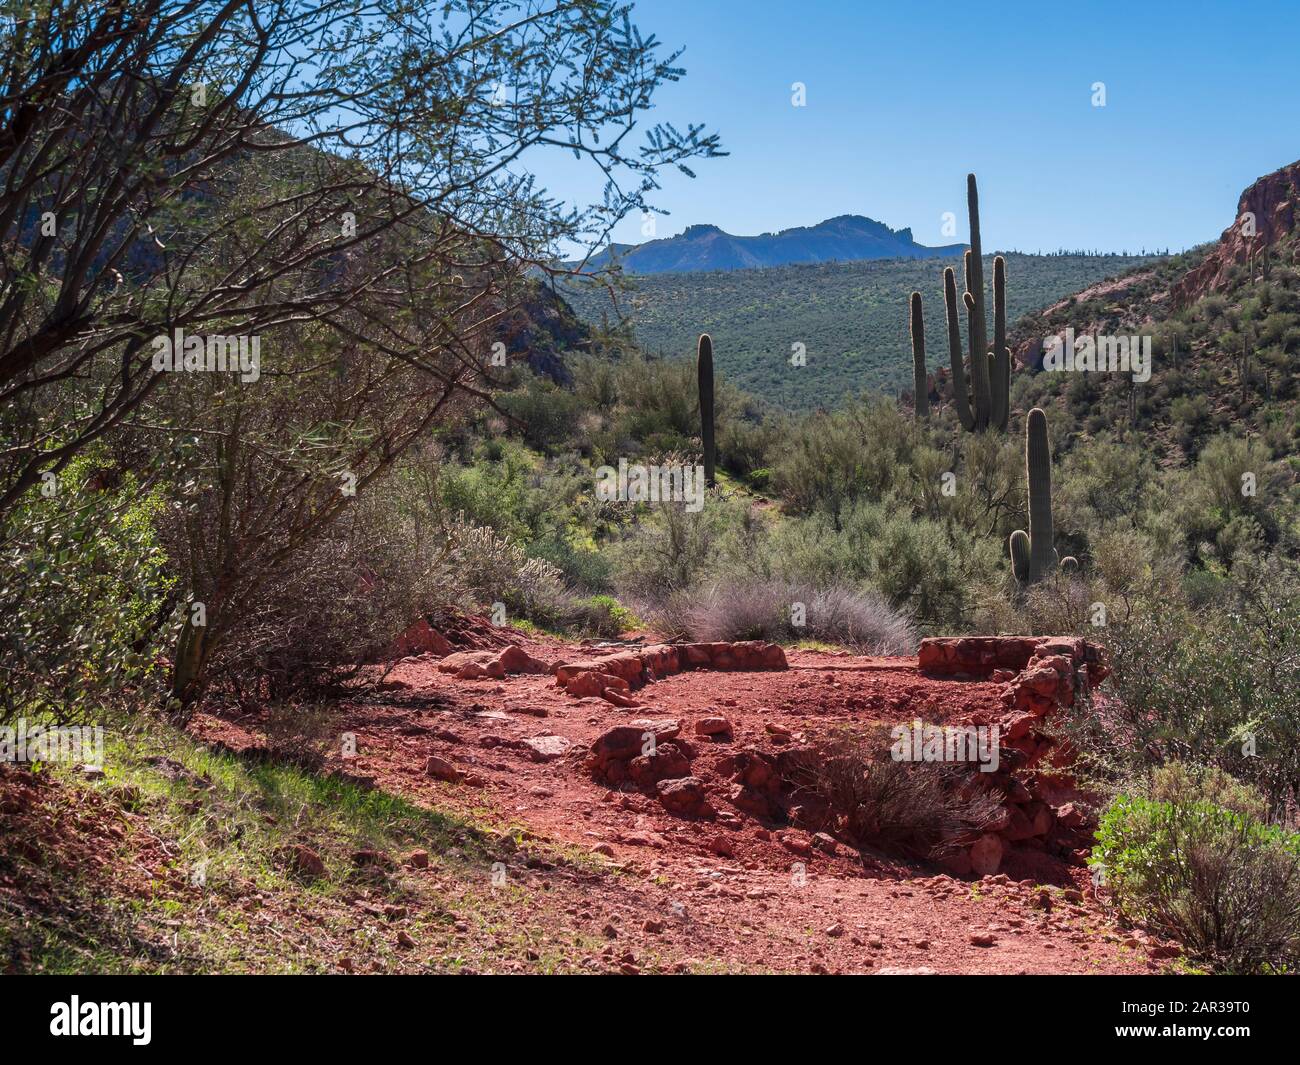 Les restes d'une fondation de mine abandonnée probablement construite vers 1956 par Ralph Morris, Indian Paint Mine, Superstition Wilderness, Arizona. Banque D'Images